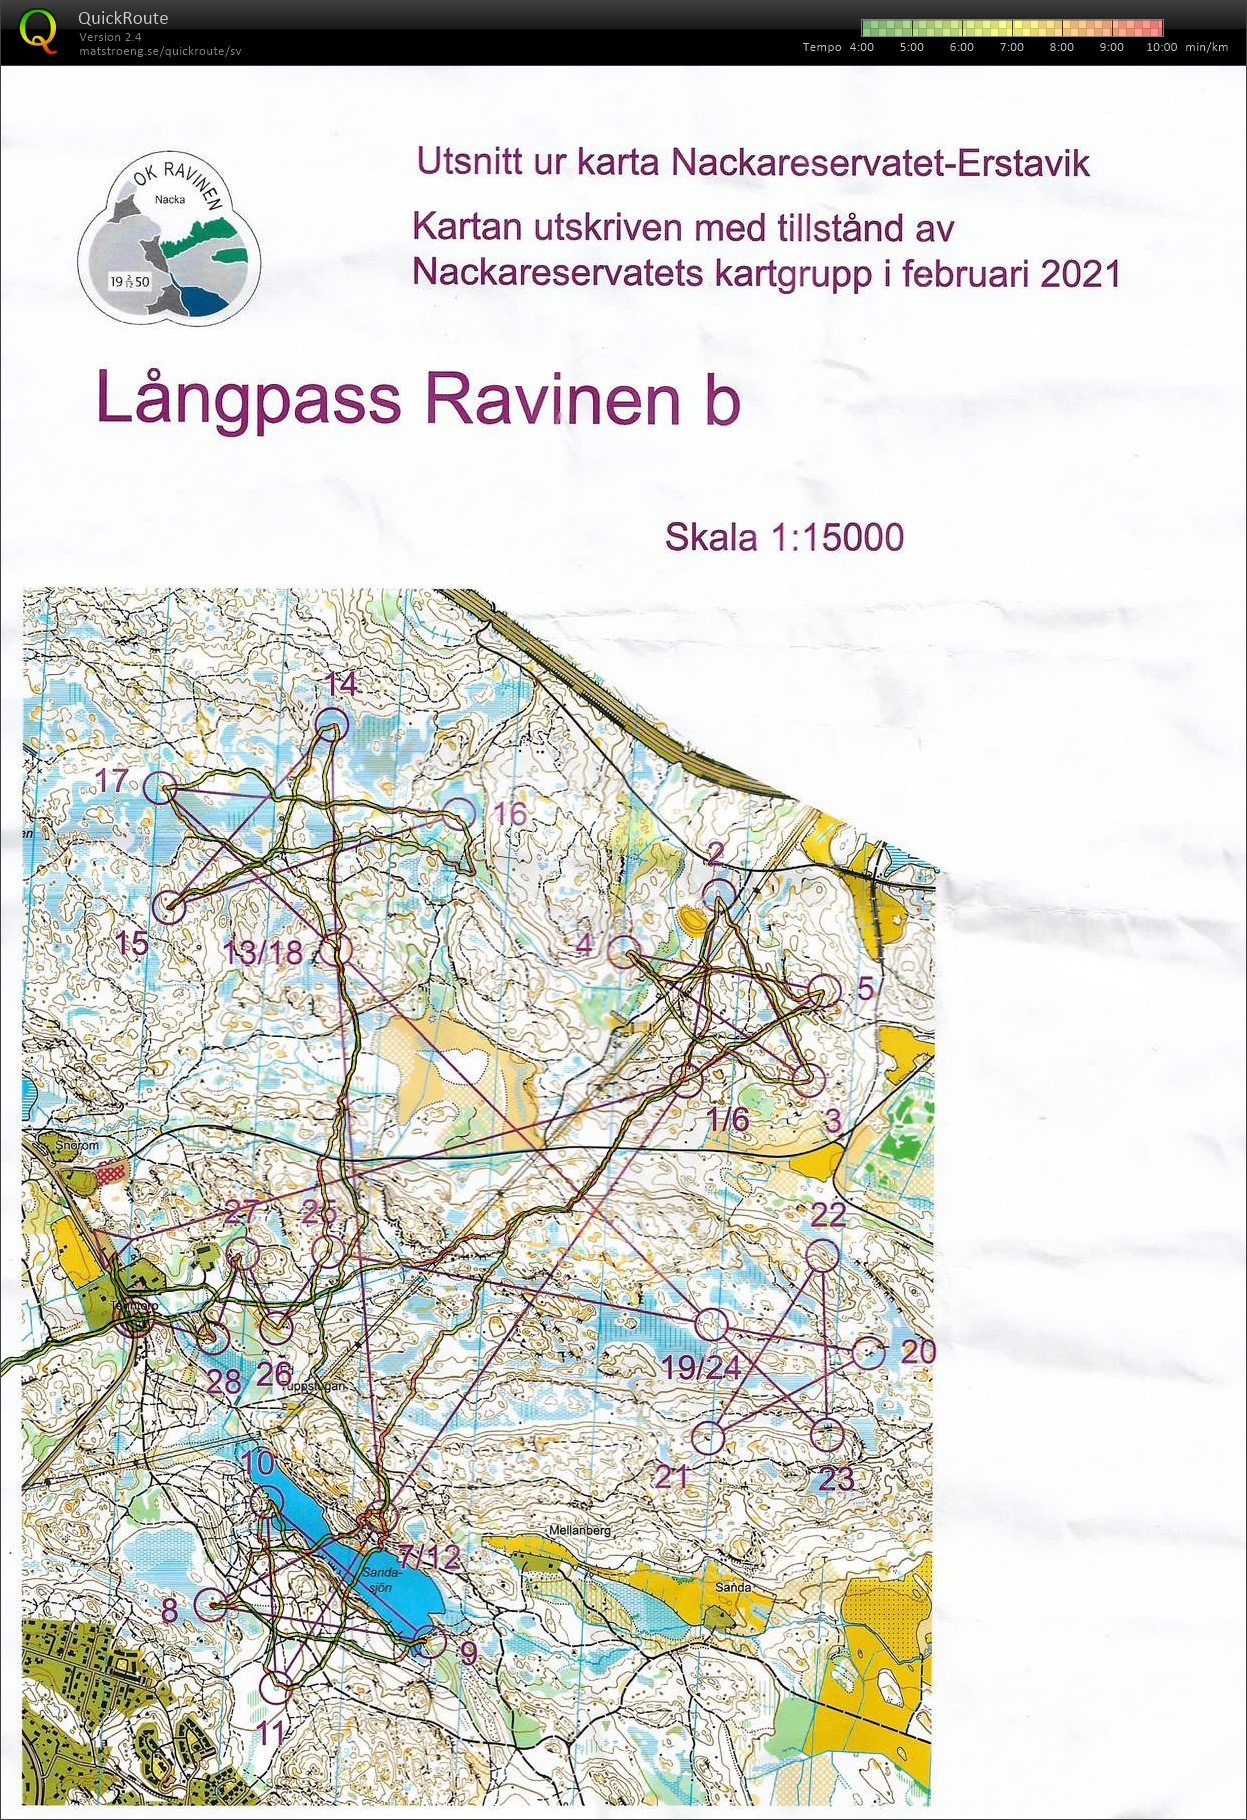 Långpass (20.02.2021)